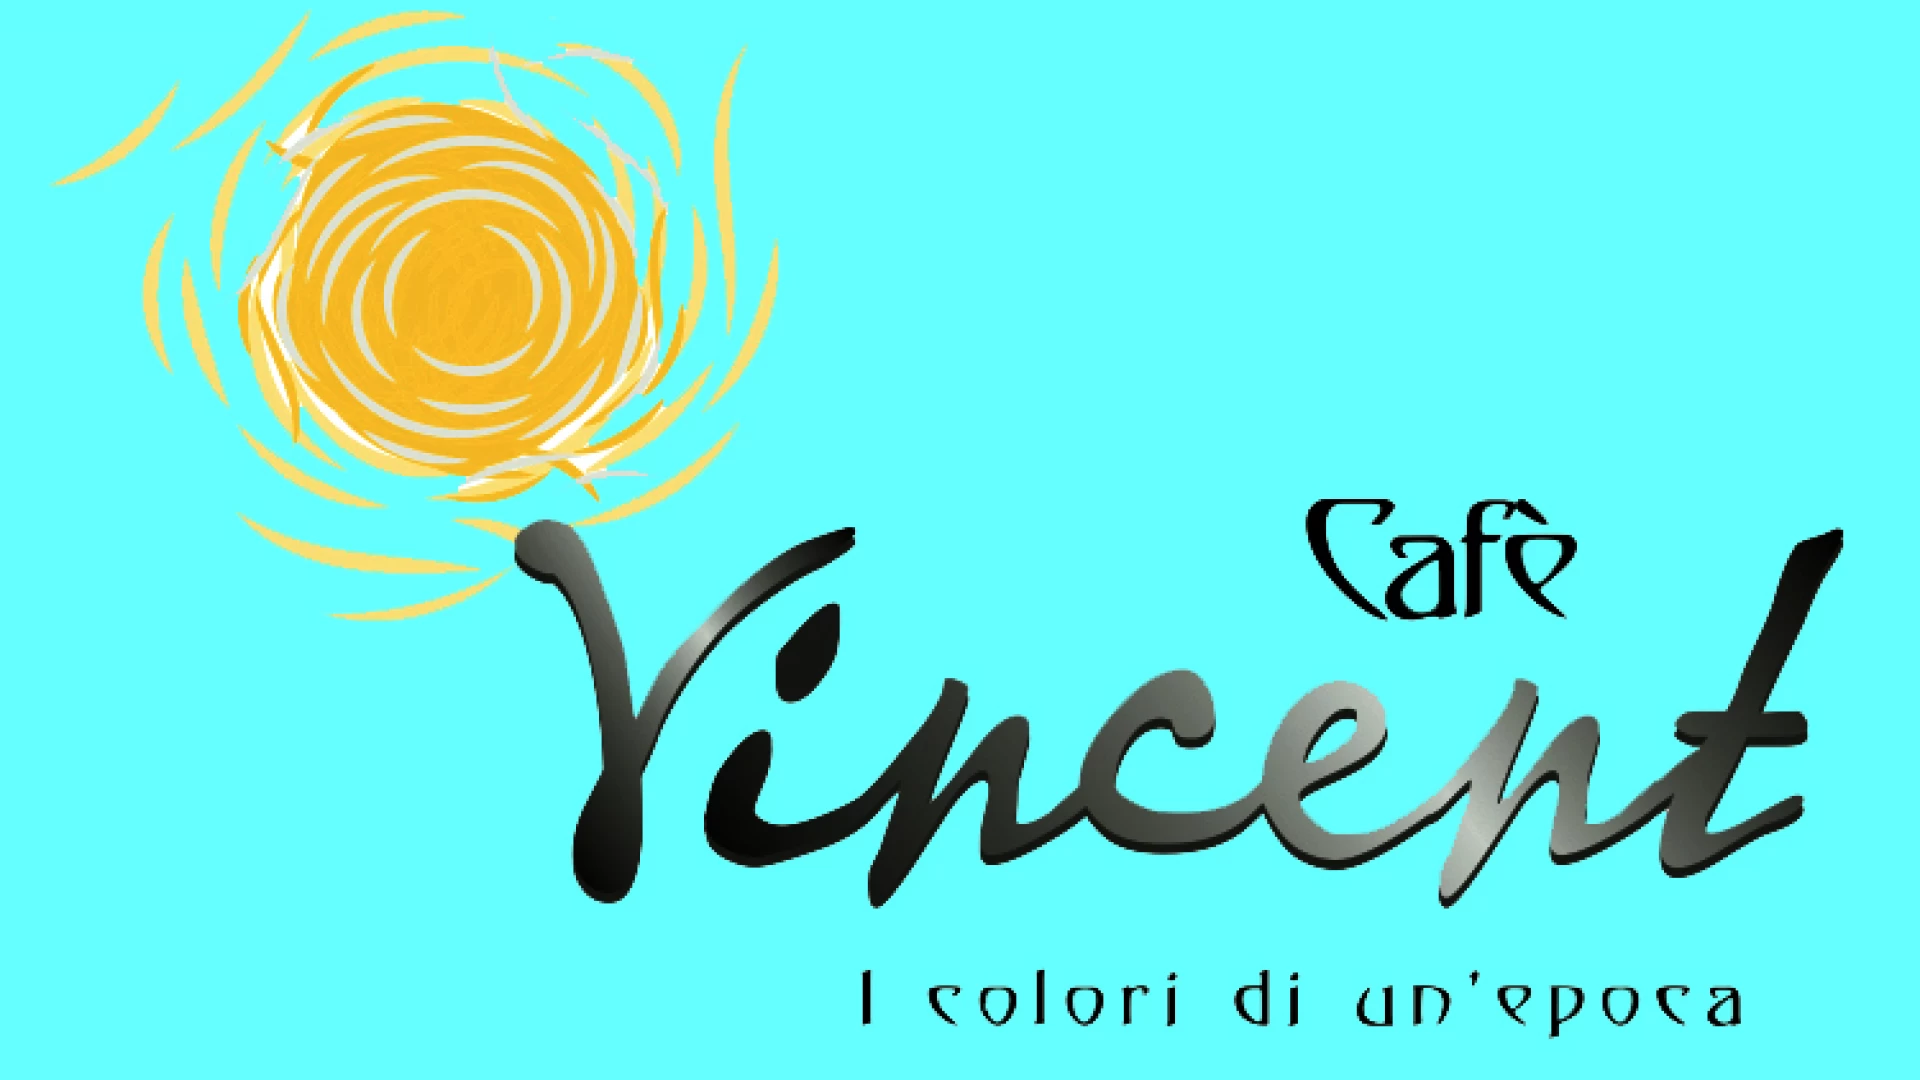 Isernia: all’Auditorium Unita’ d’Italia la commedia musicale Cafè Vincent i prossimi 14 e 15 dicembre.